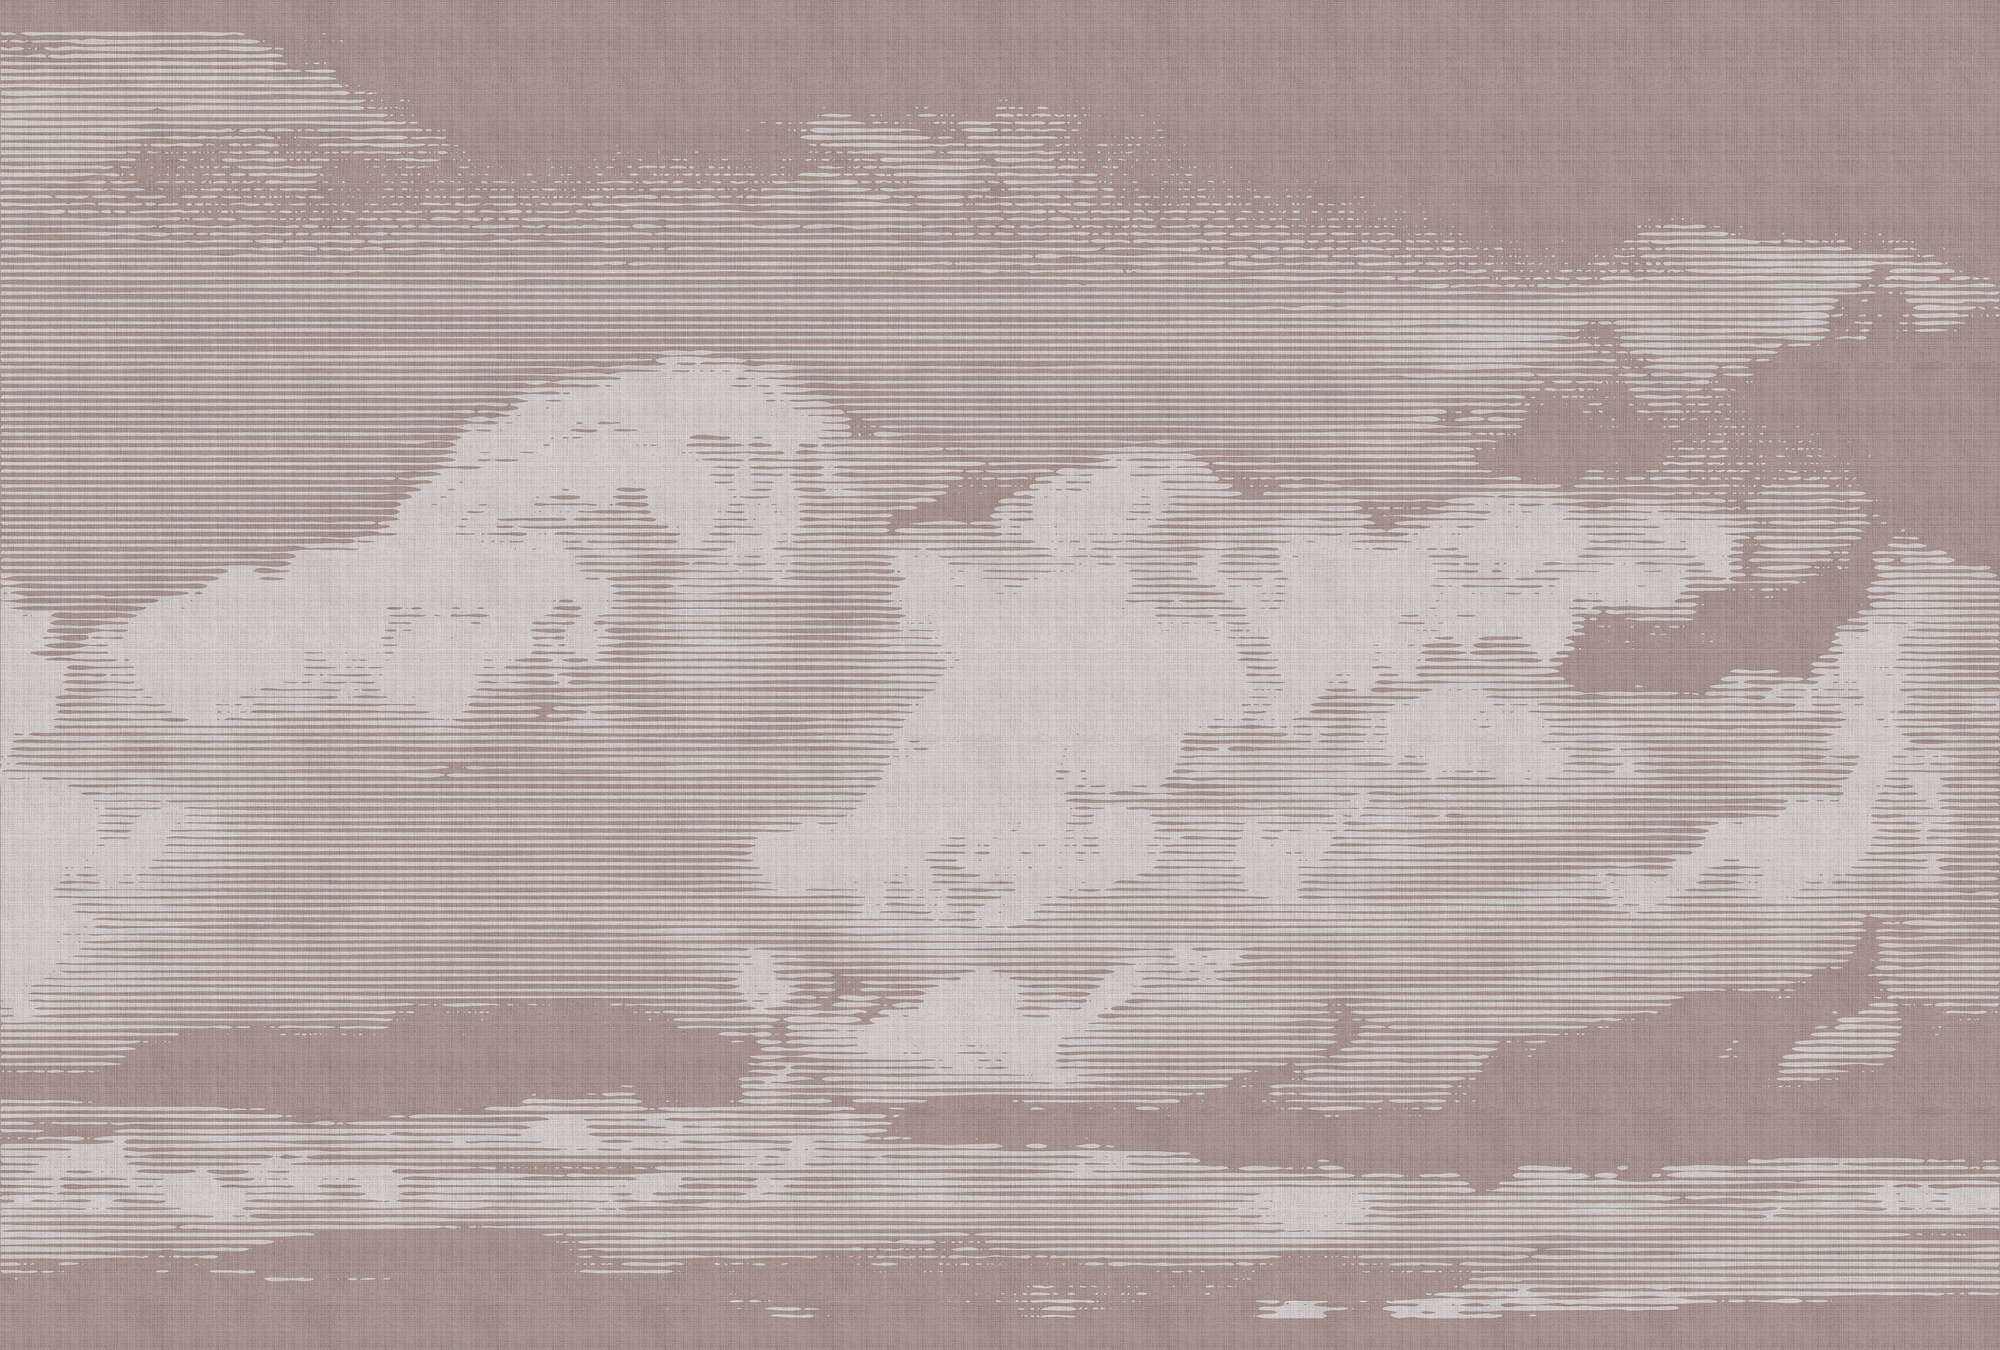             Clouds 3 - Himmlische Fototapete mit Wolkenmotiv - Naturleinen Struktur – Grau, Rosa | Mattes Glattvlies
        